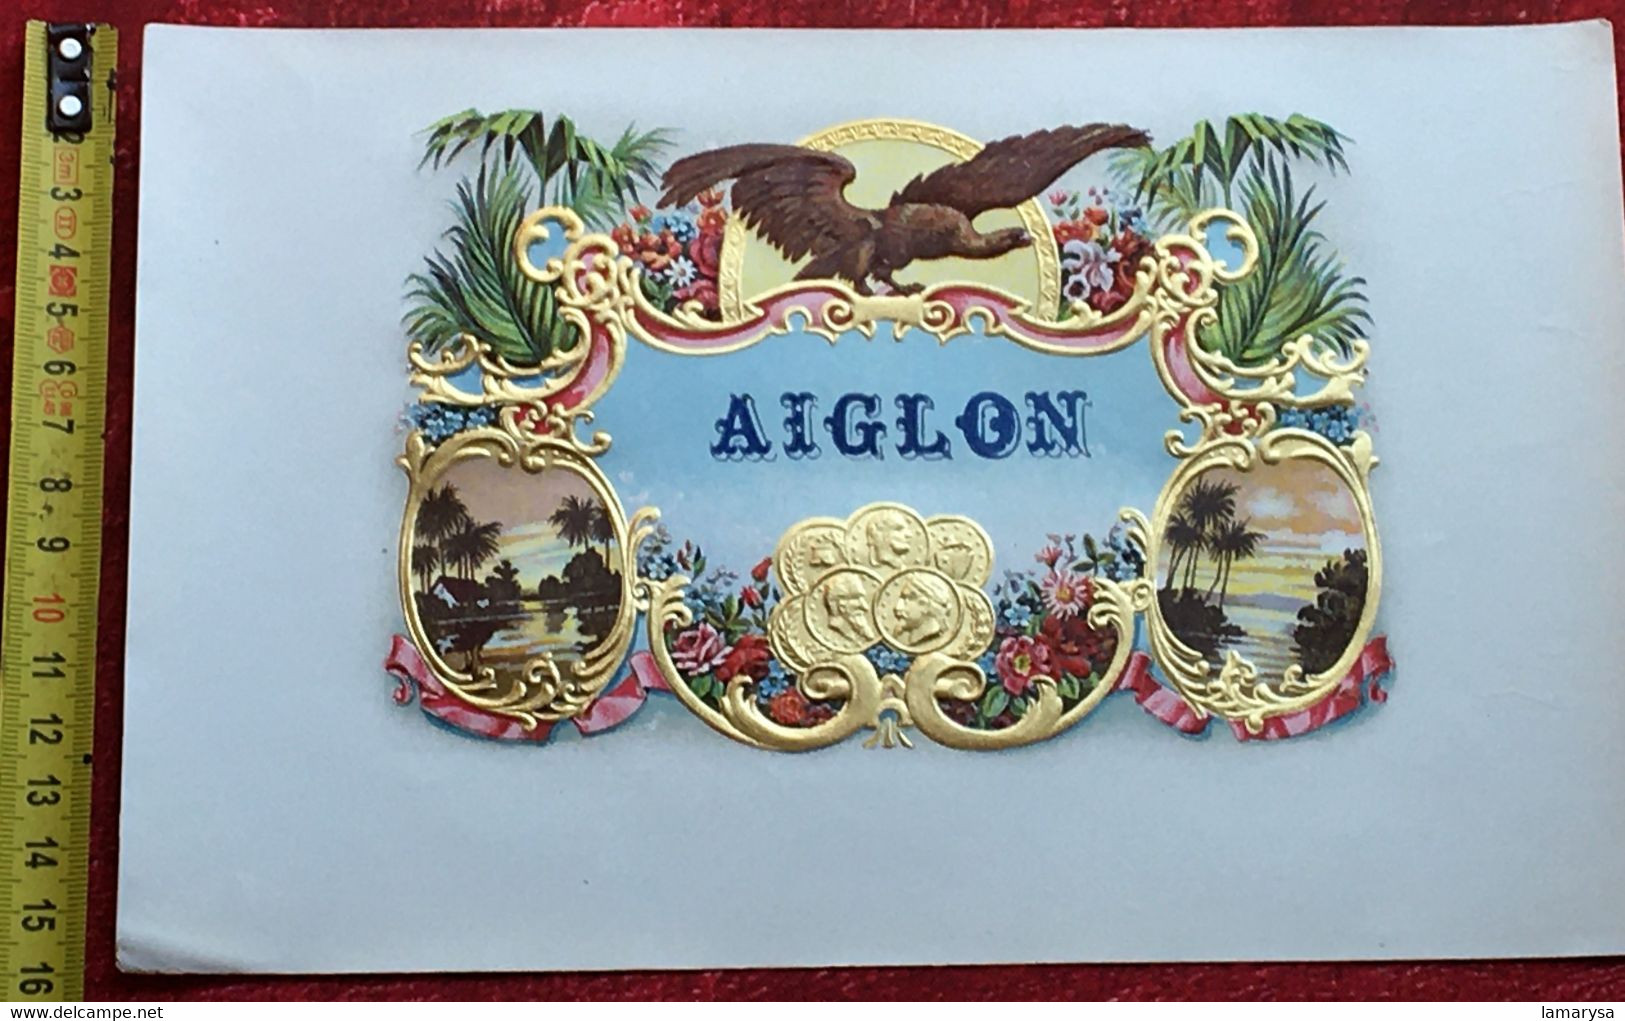 Vintage 1950-AIGLON Étiquette De Boîte De Chocolat Neuve-☛Chromo- Image Chocolat Aiglon-New Chocolate Box Label-☛Picture - Aiglon